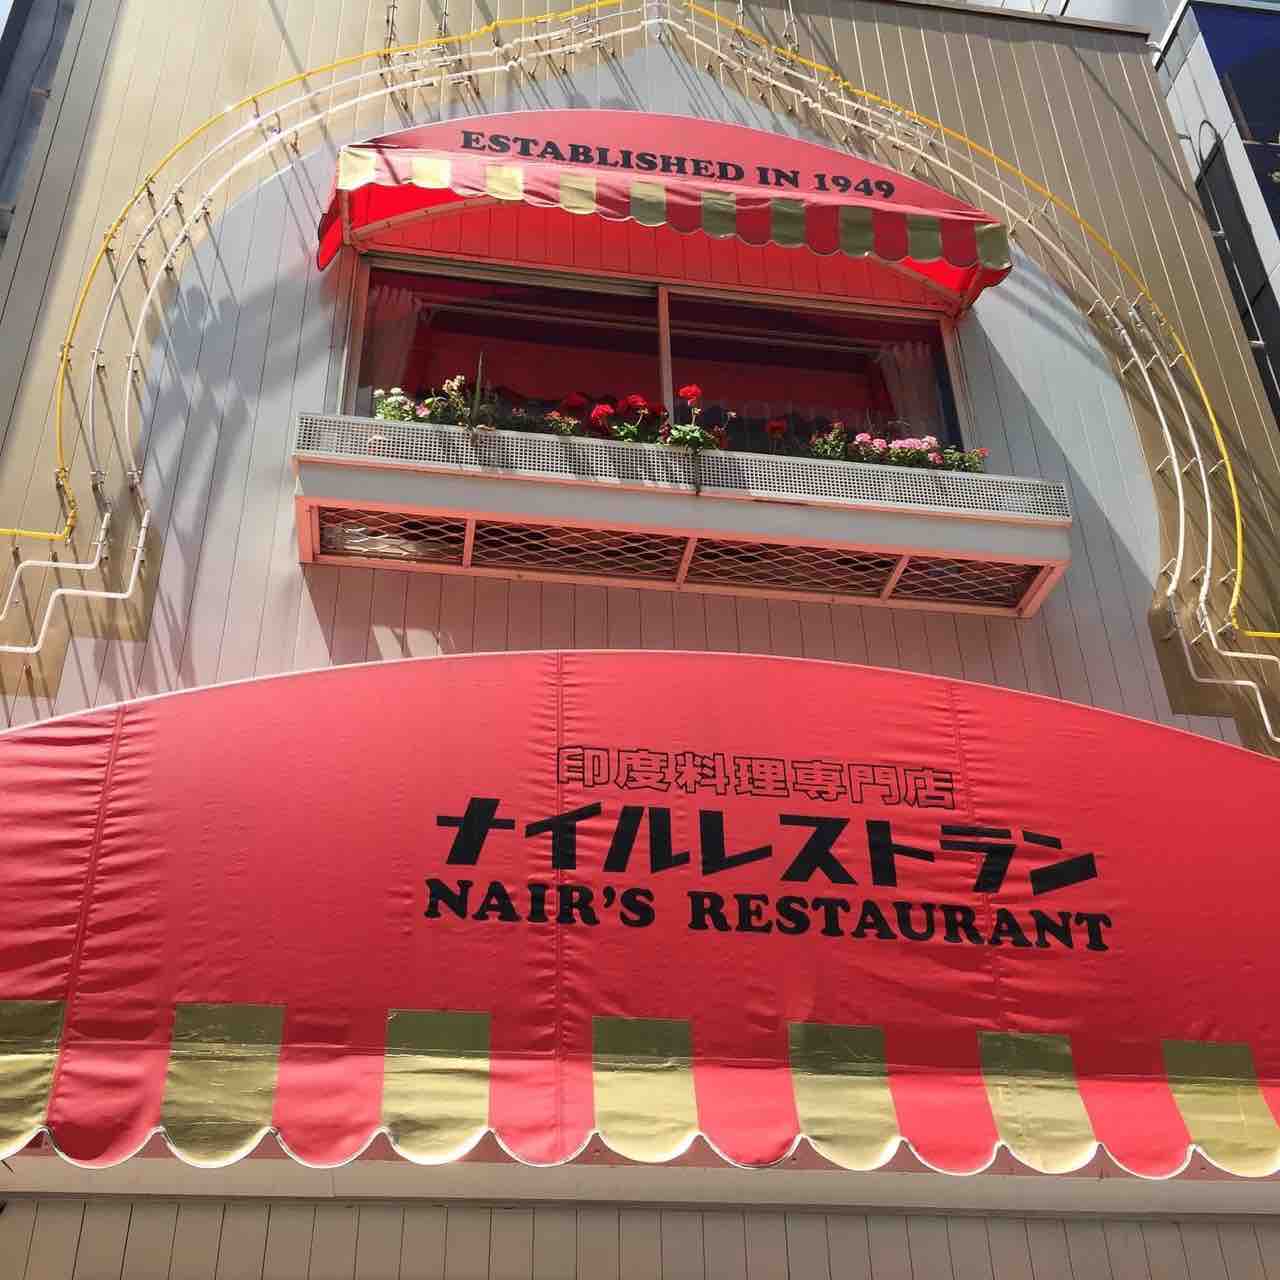 ナイルレストラン 東銀座 東京 1949年創業 日本最古のインド料理店でムルギーランチ Nair S Restaurant 大阪 福岡カレーステーション